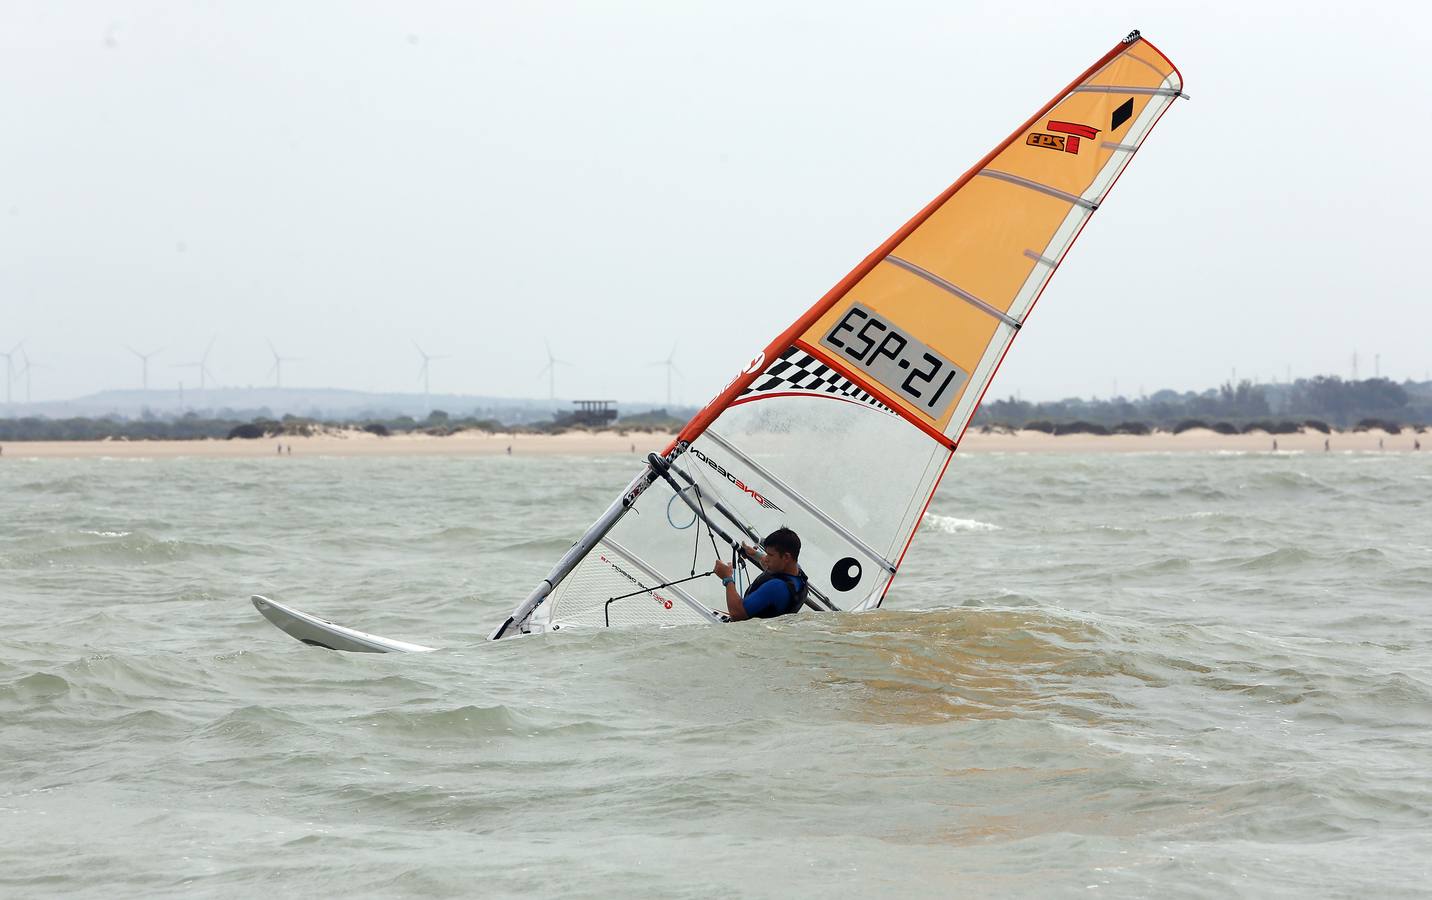 Campeonatos de España de Windsurfing y Catamarán en El Puerto